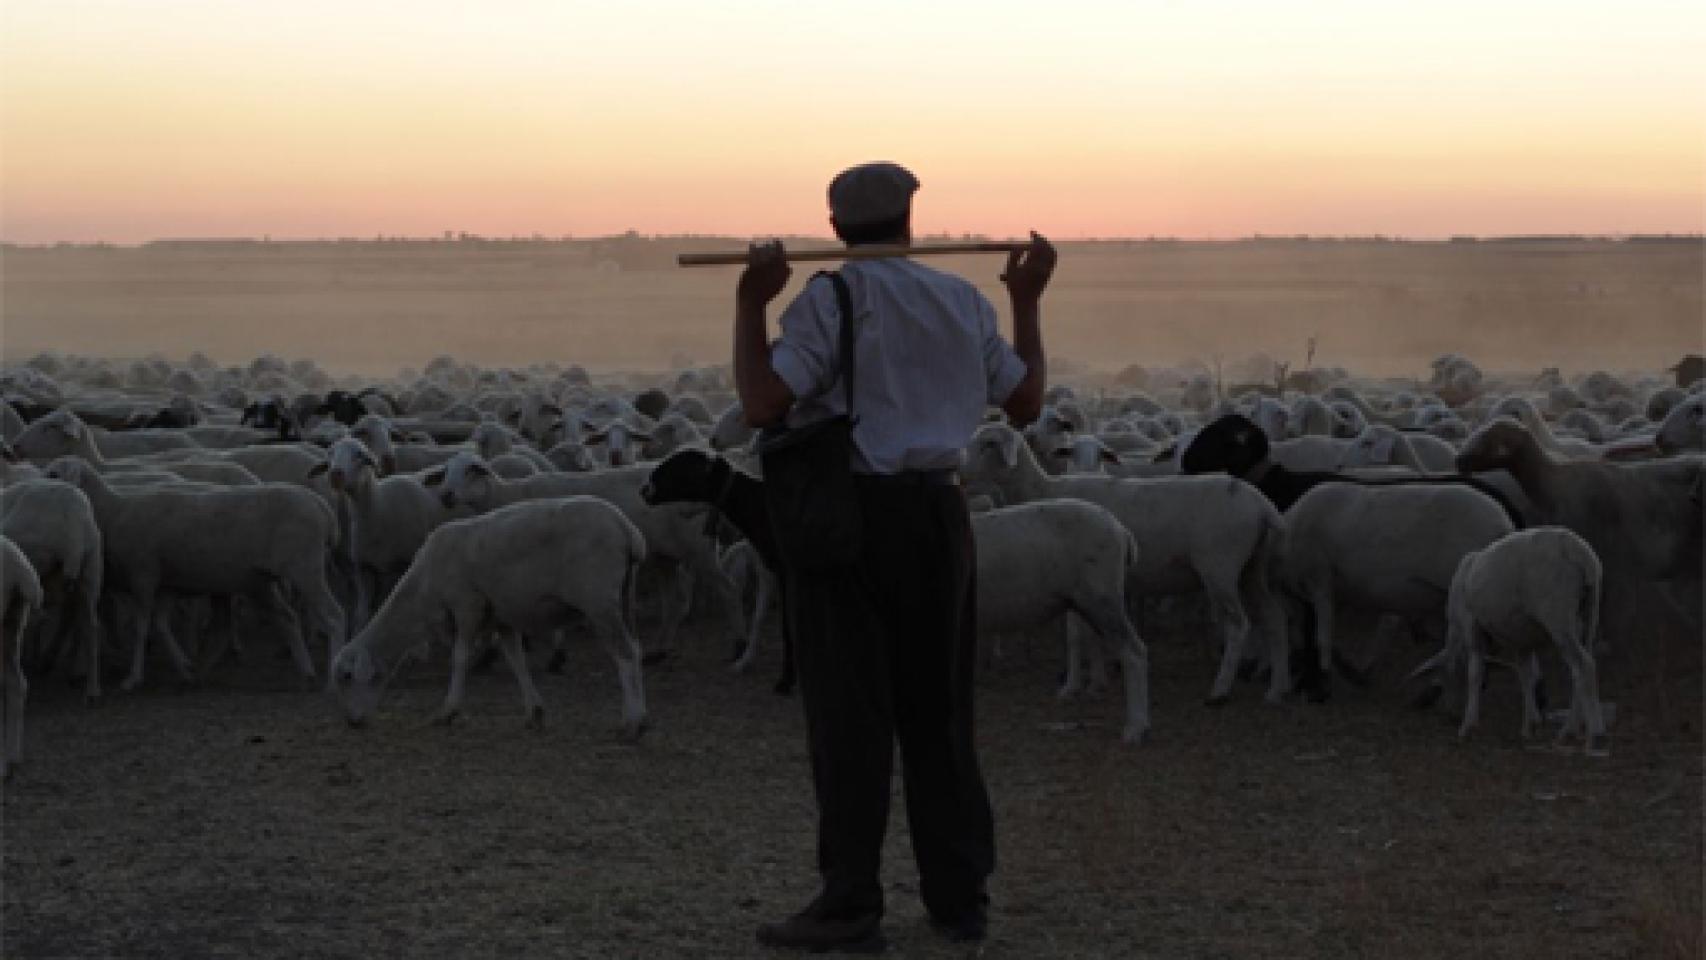 Image: El pastor, un sólido drama rural